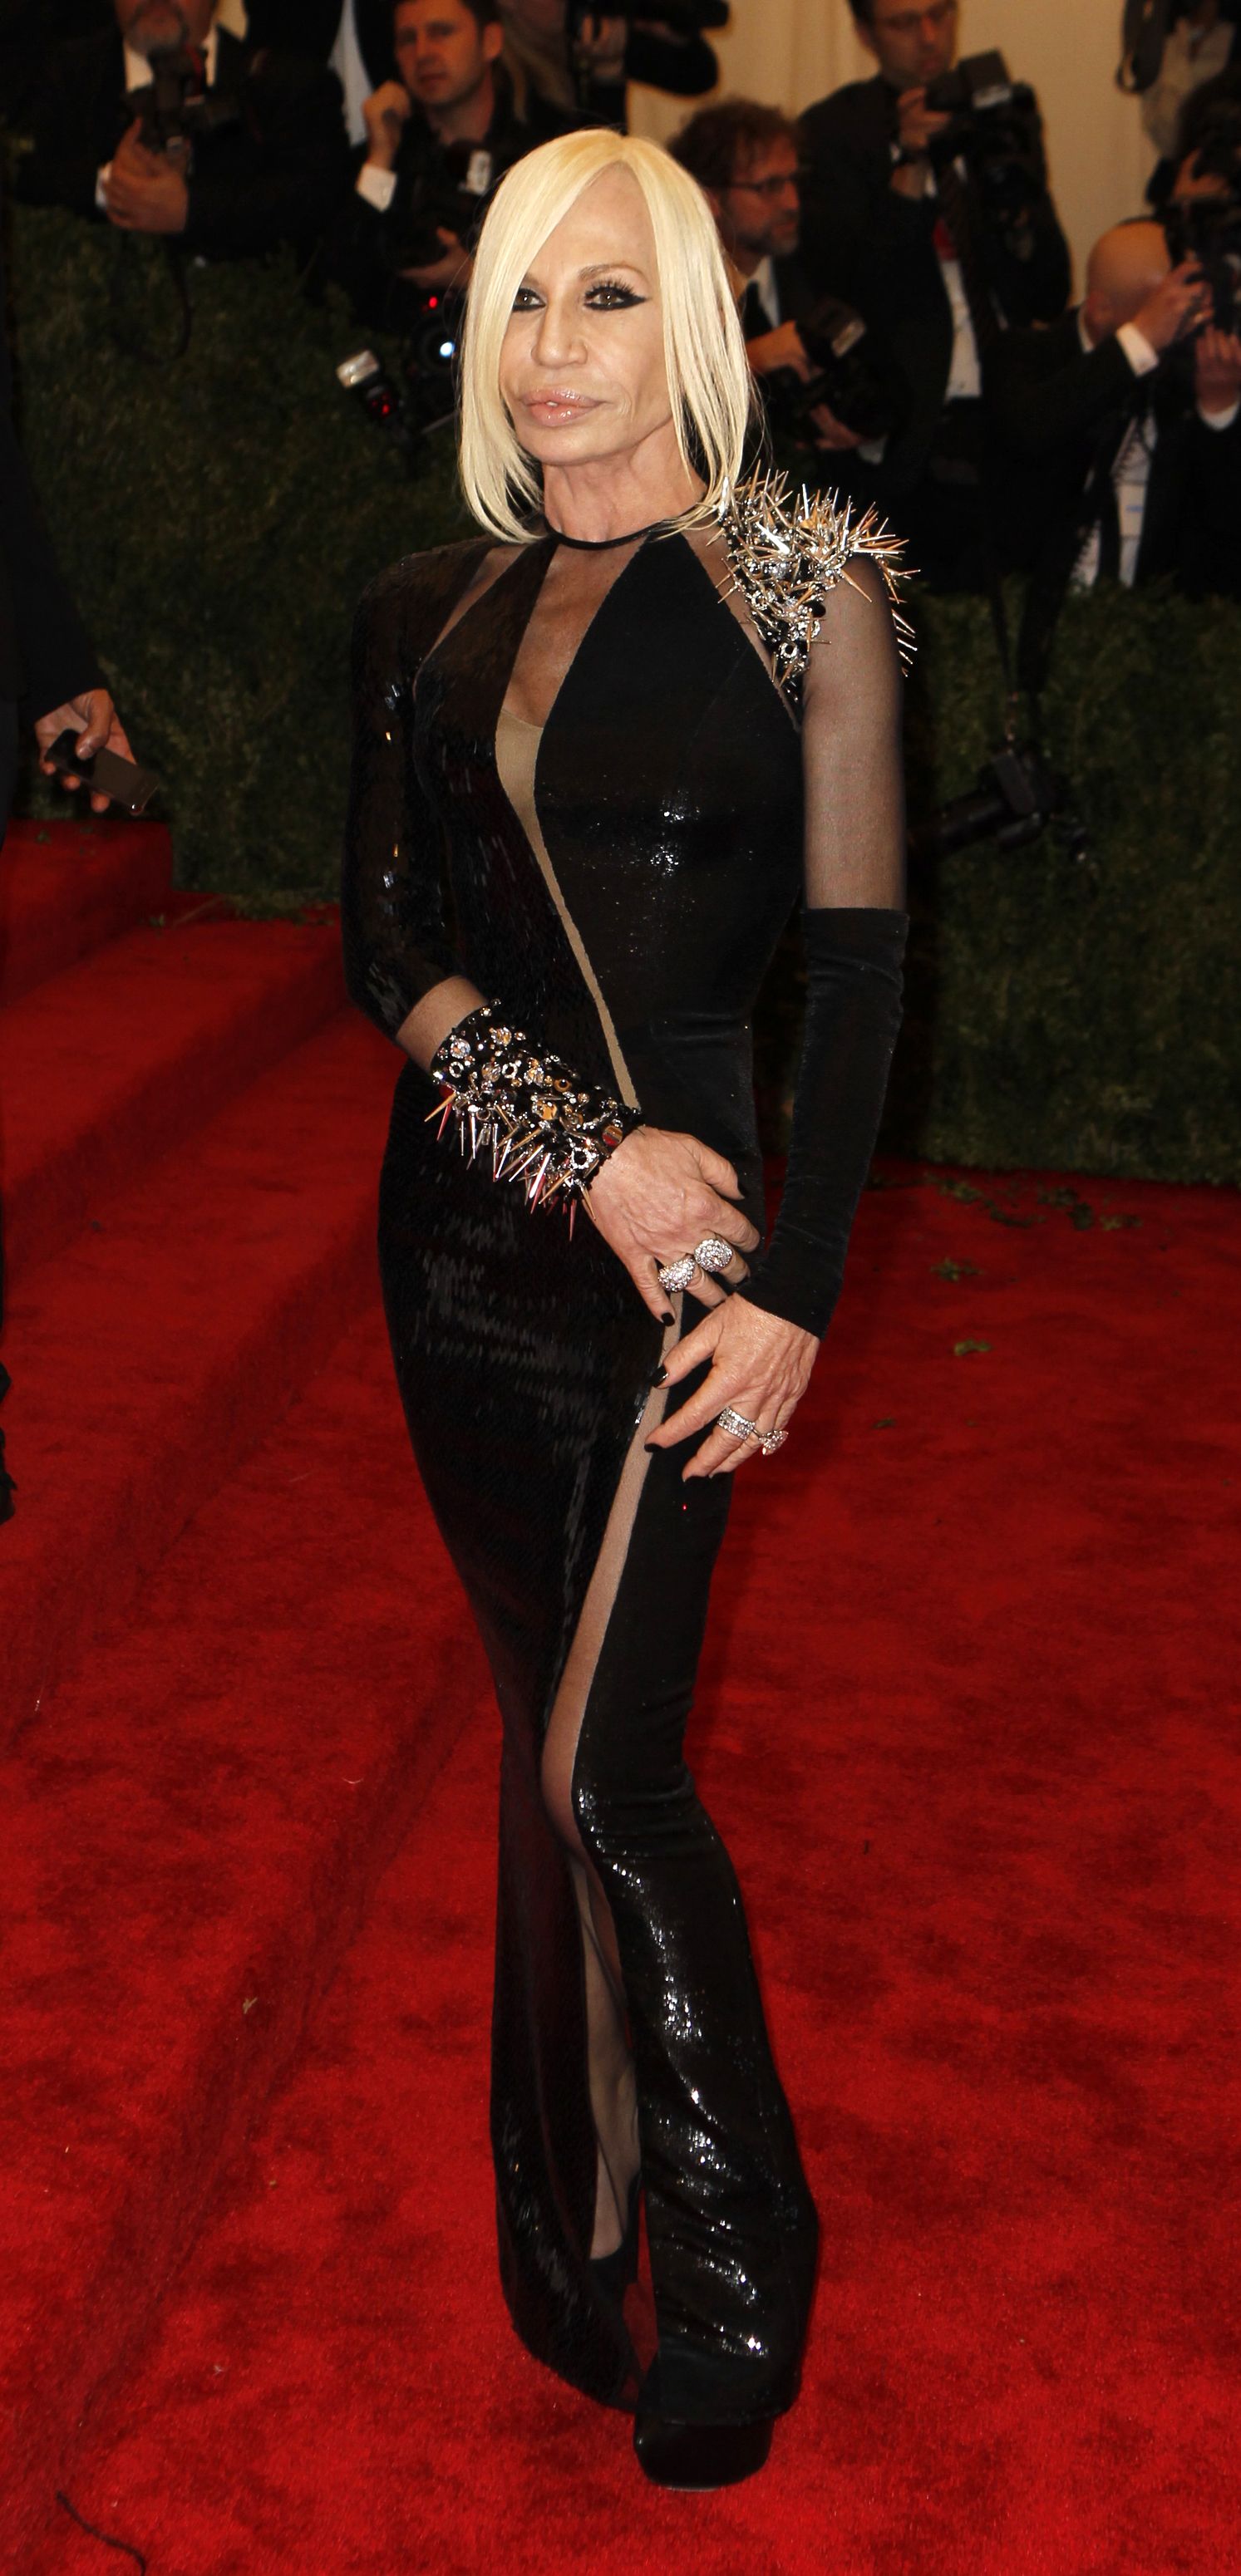 Donatella Versace at the 2013 Met Gala.